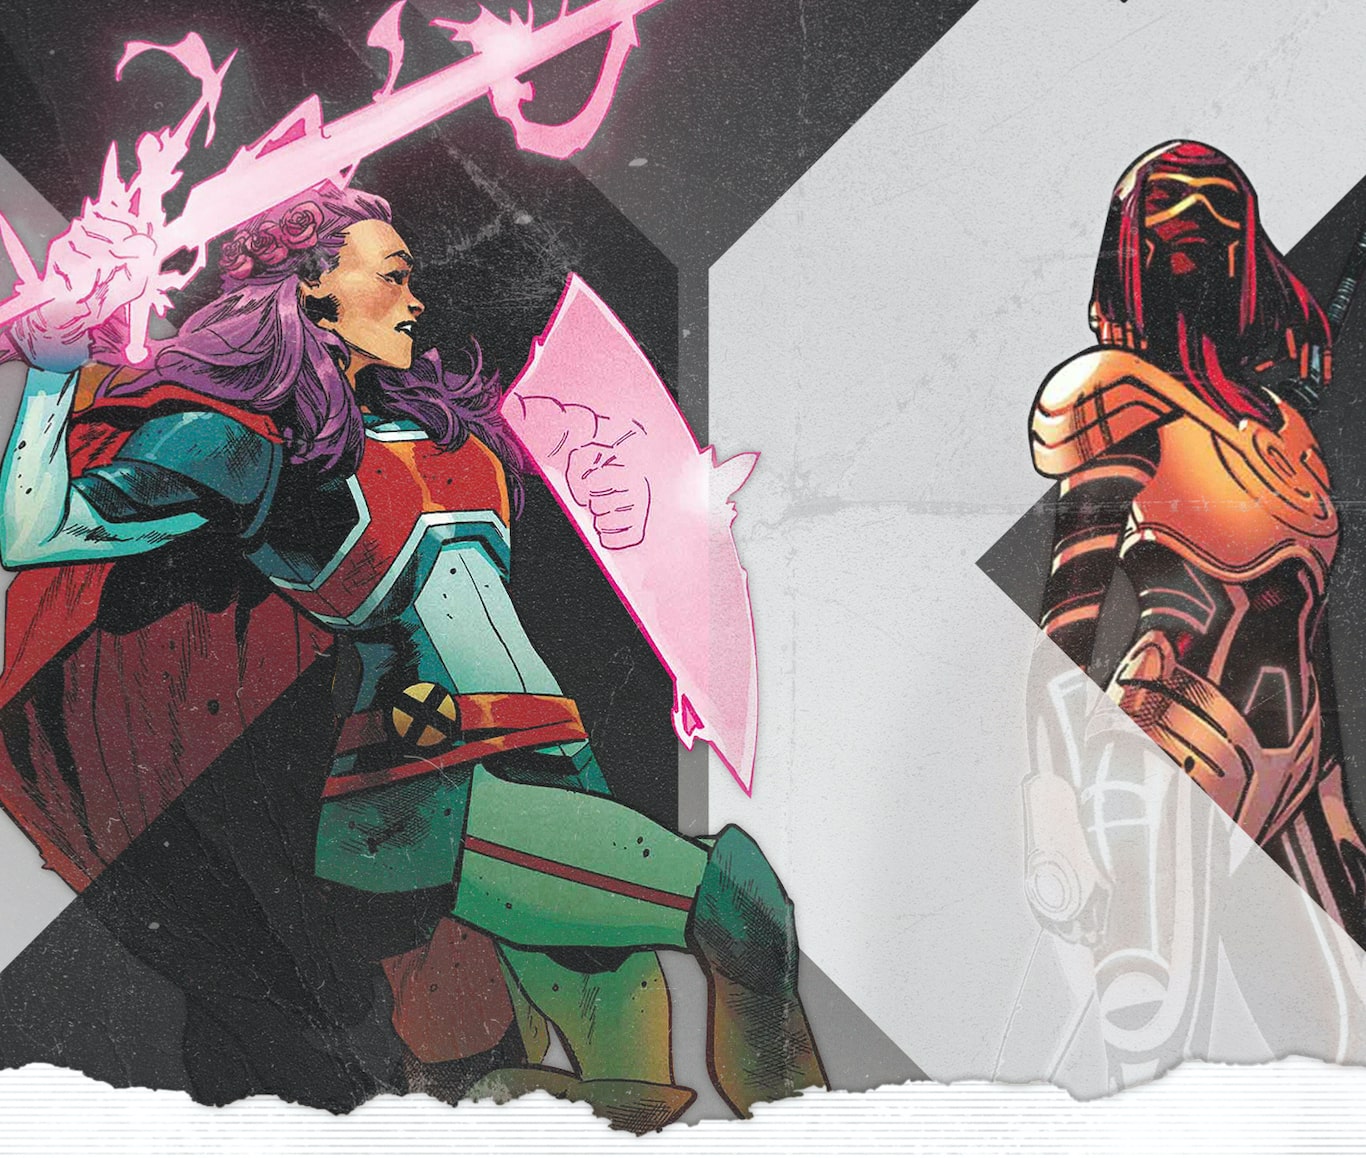 Marvel Comics First Look: Captain Britain vs. Isca in 'Excalibur' #14